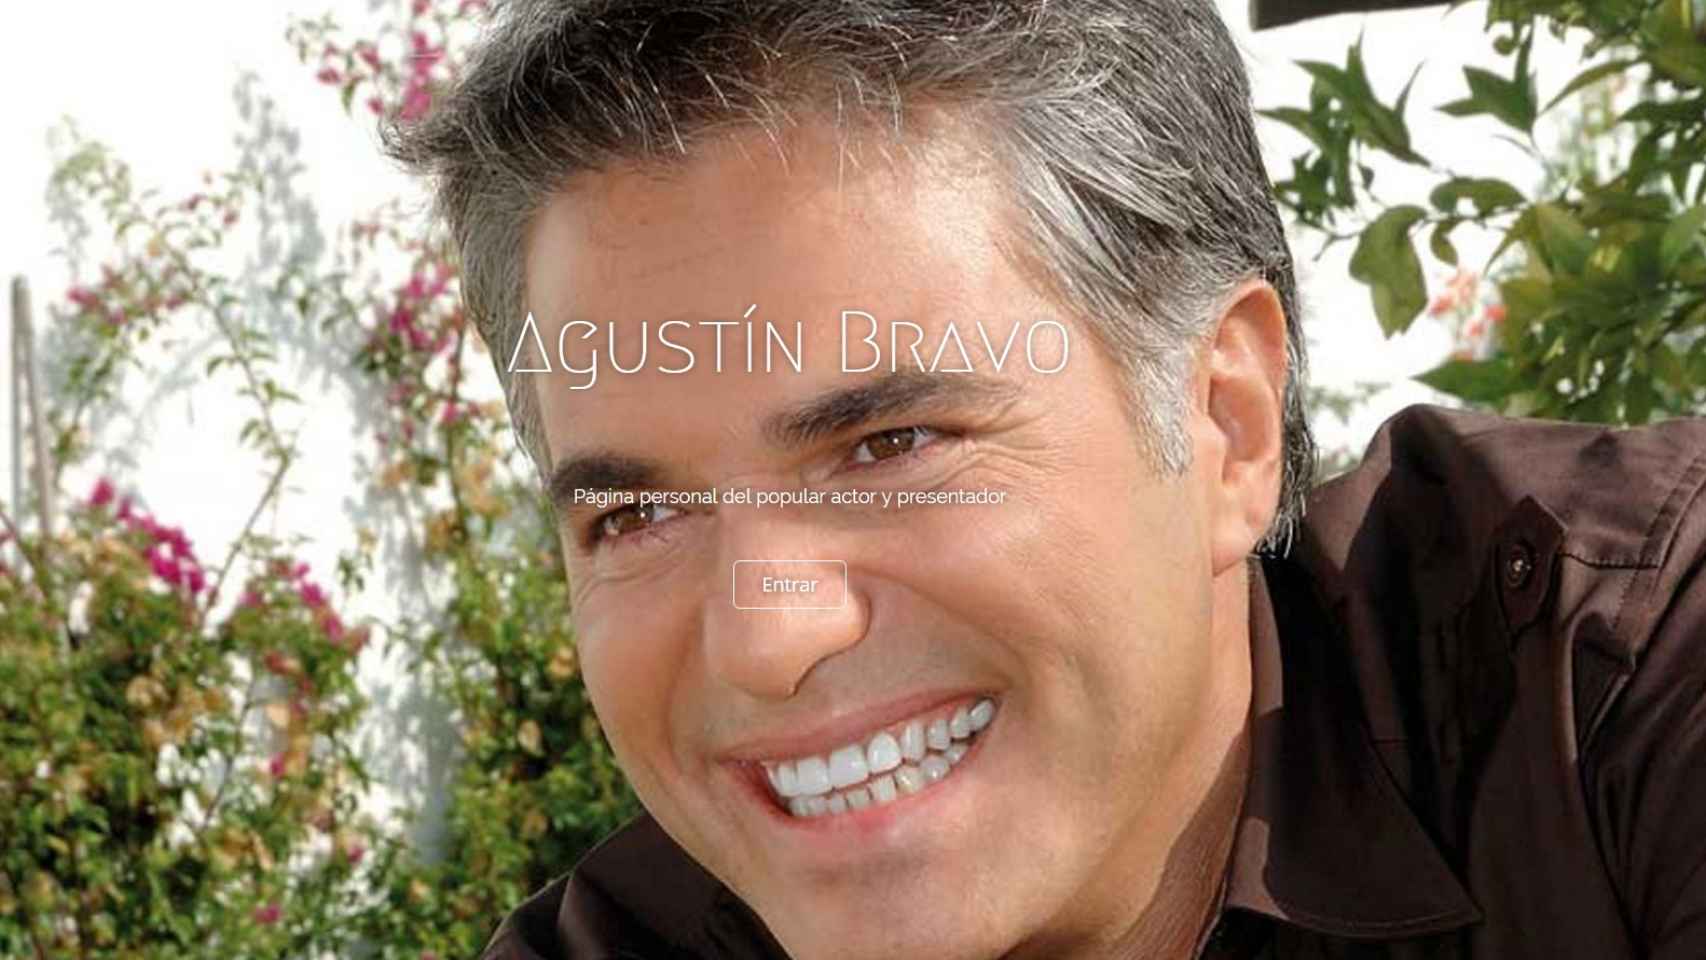 El presentador Agustín Bravo en la portada de su web.